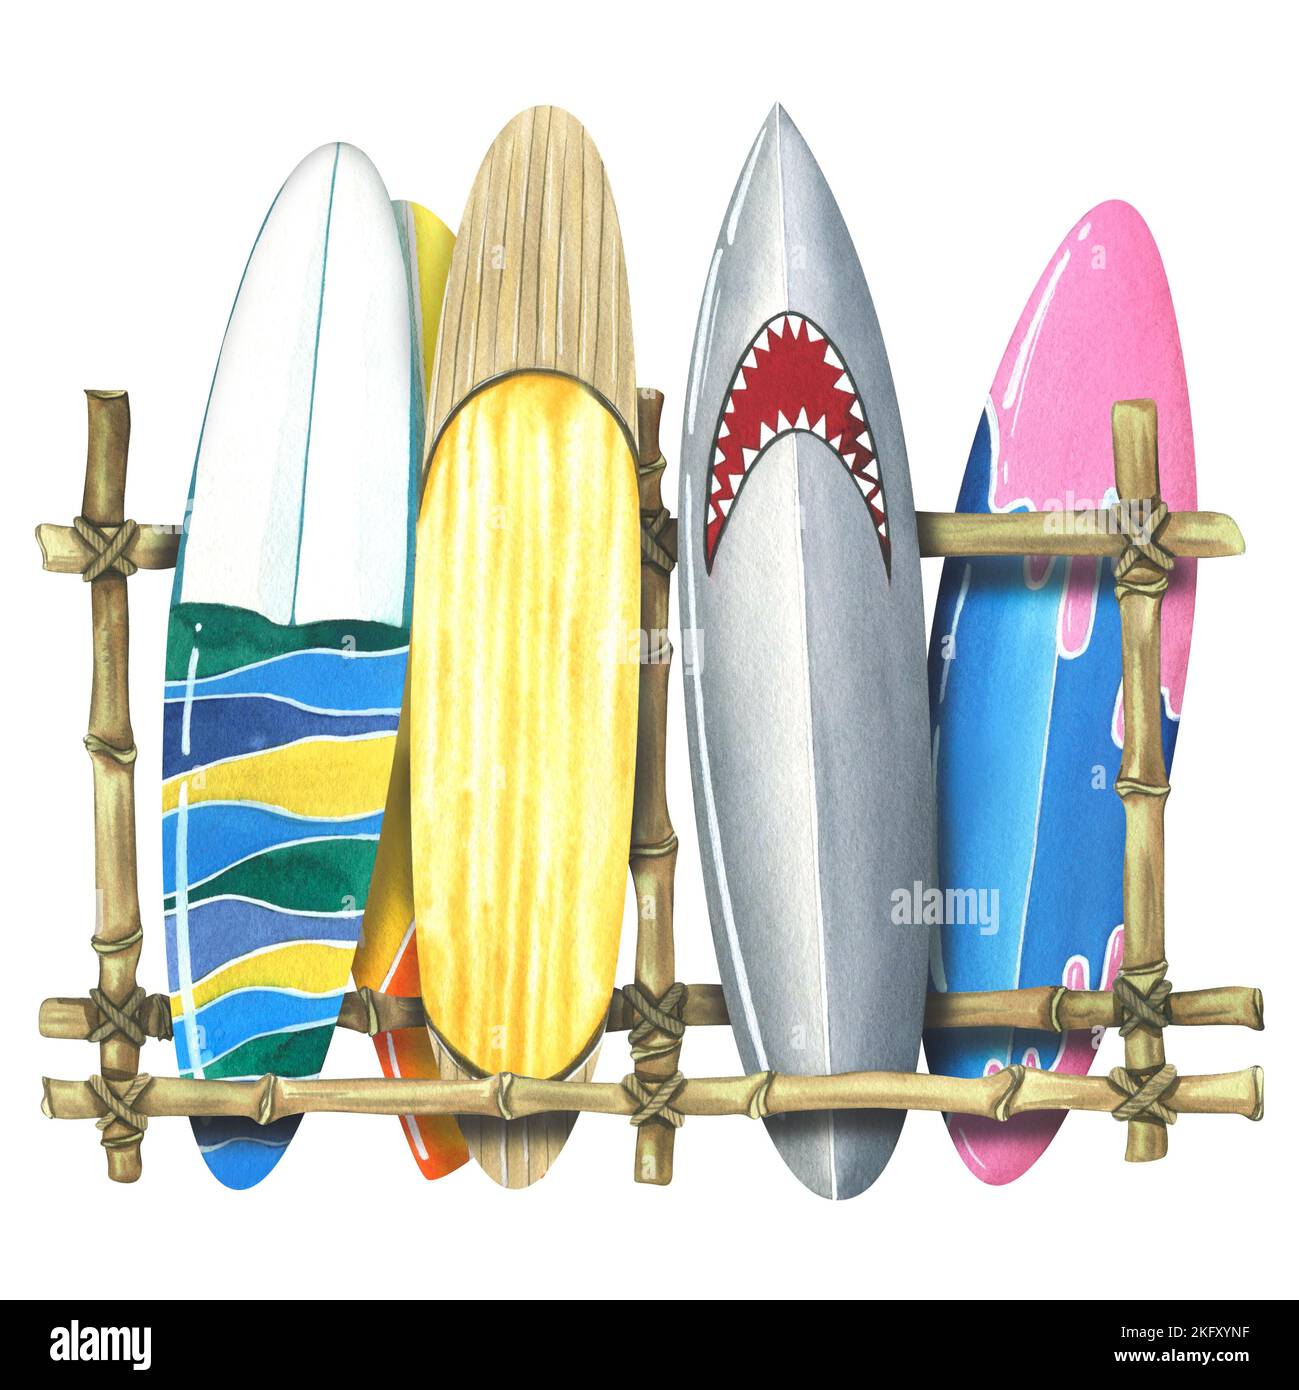 Différentes planches de surf sur un support en bambou. Illustration aquarelle. La composition est isolée sur un fond blanc de la collection DE SURF. Pour Banque D'Images